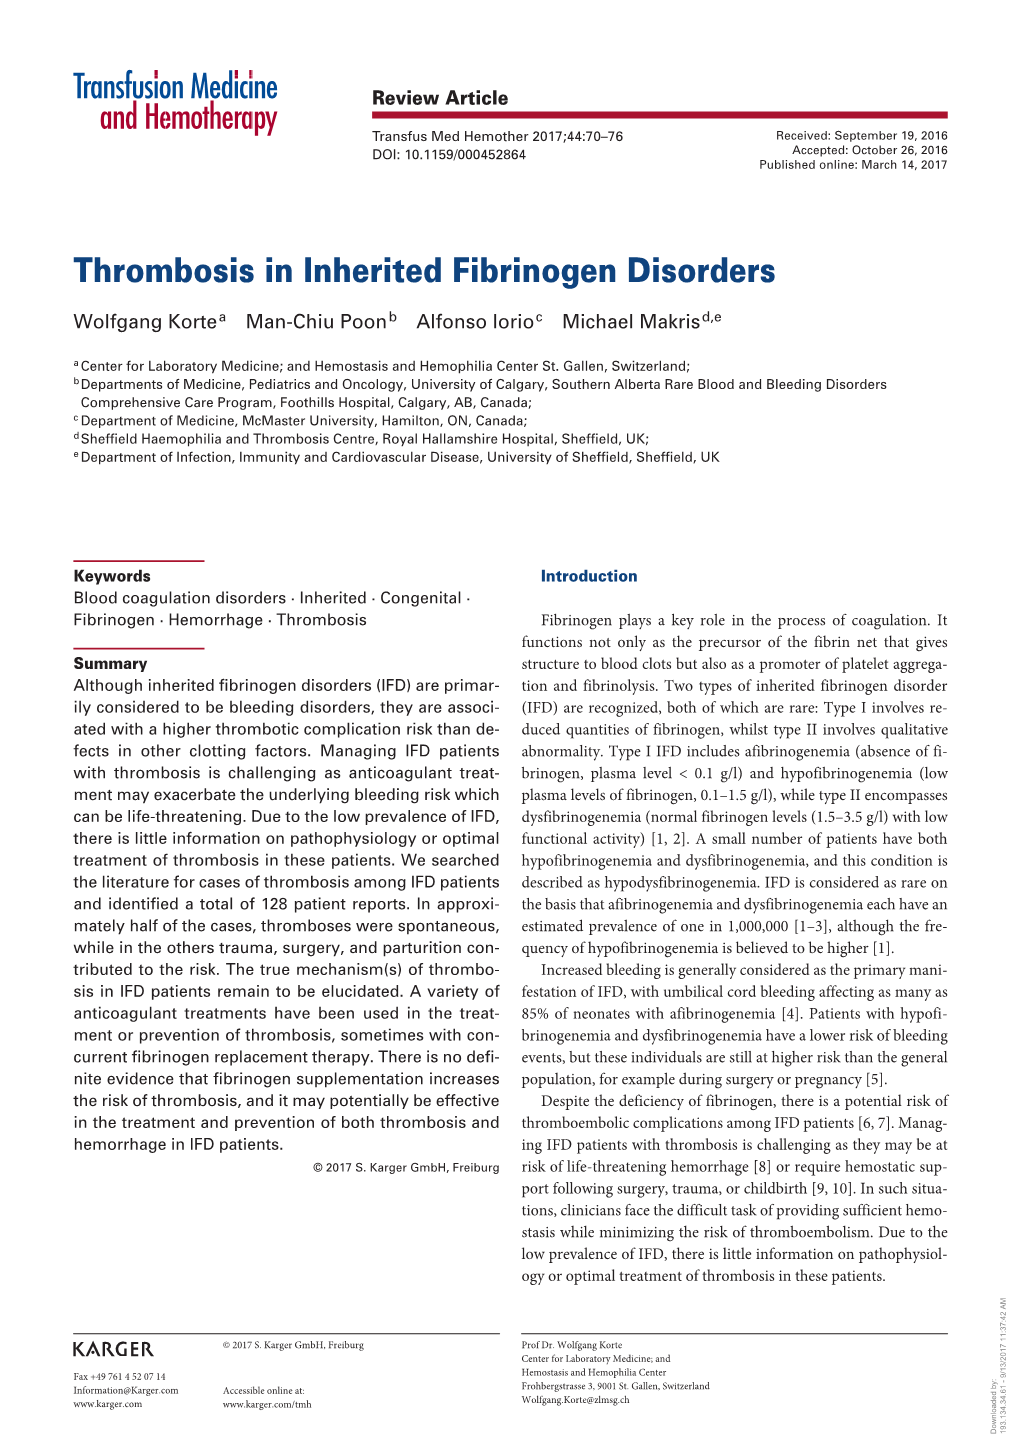 Thrombosis in Inherited Fibrinogen Disorders